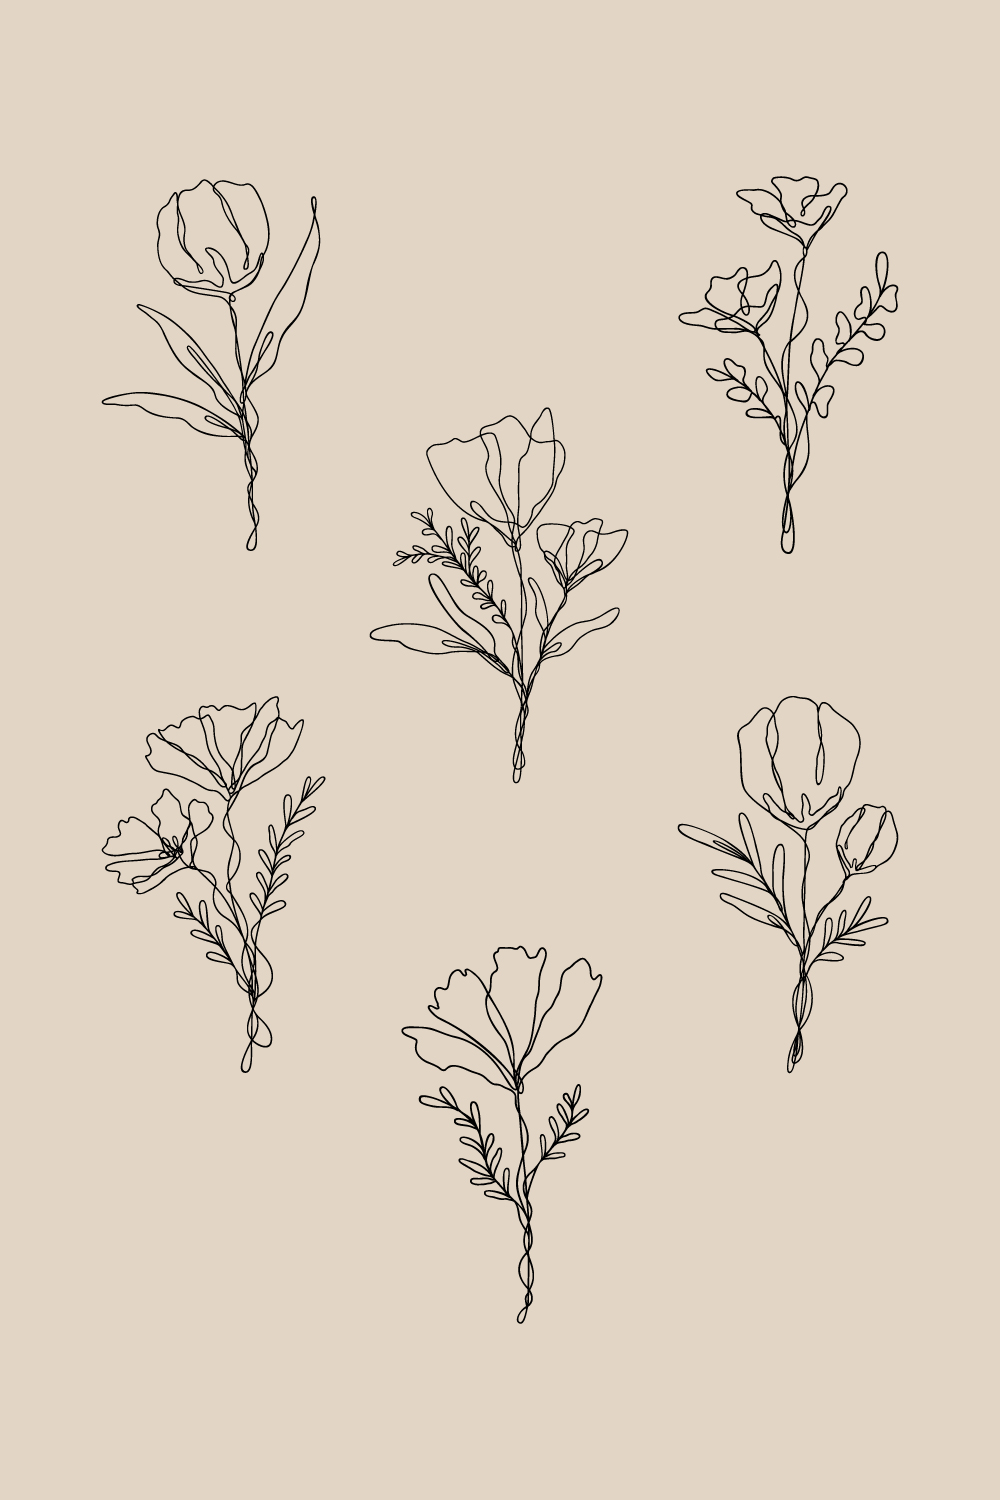 6 Floral Line Art Bundle | Continuous Line Wildflower Design Set pinterest preview image.